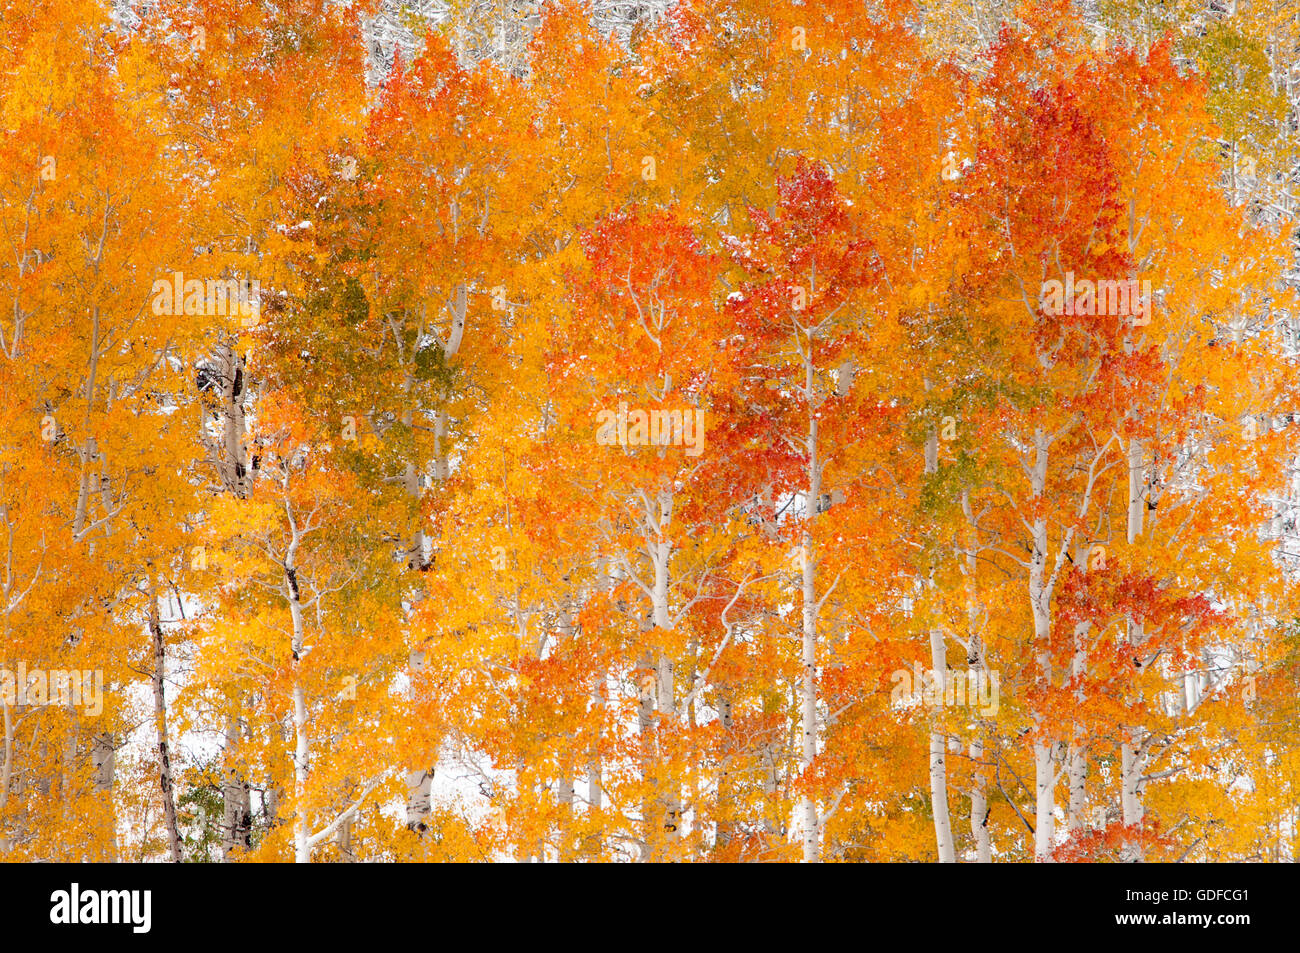 Arboleda de brillante color rojo, naranja y amarillo otoño aspen Árboles con nieve. Foto de stock